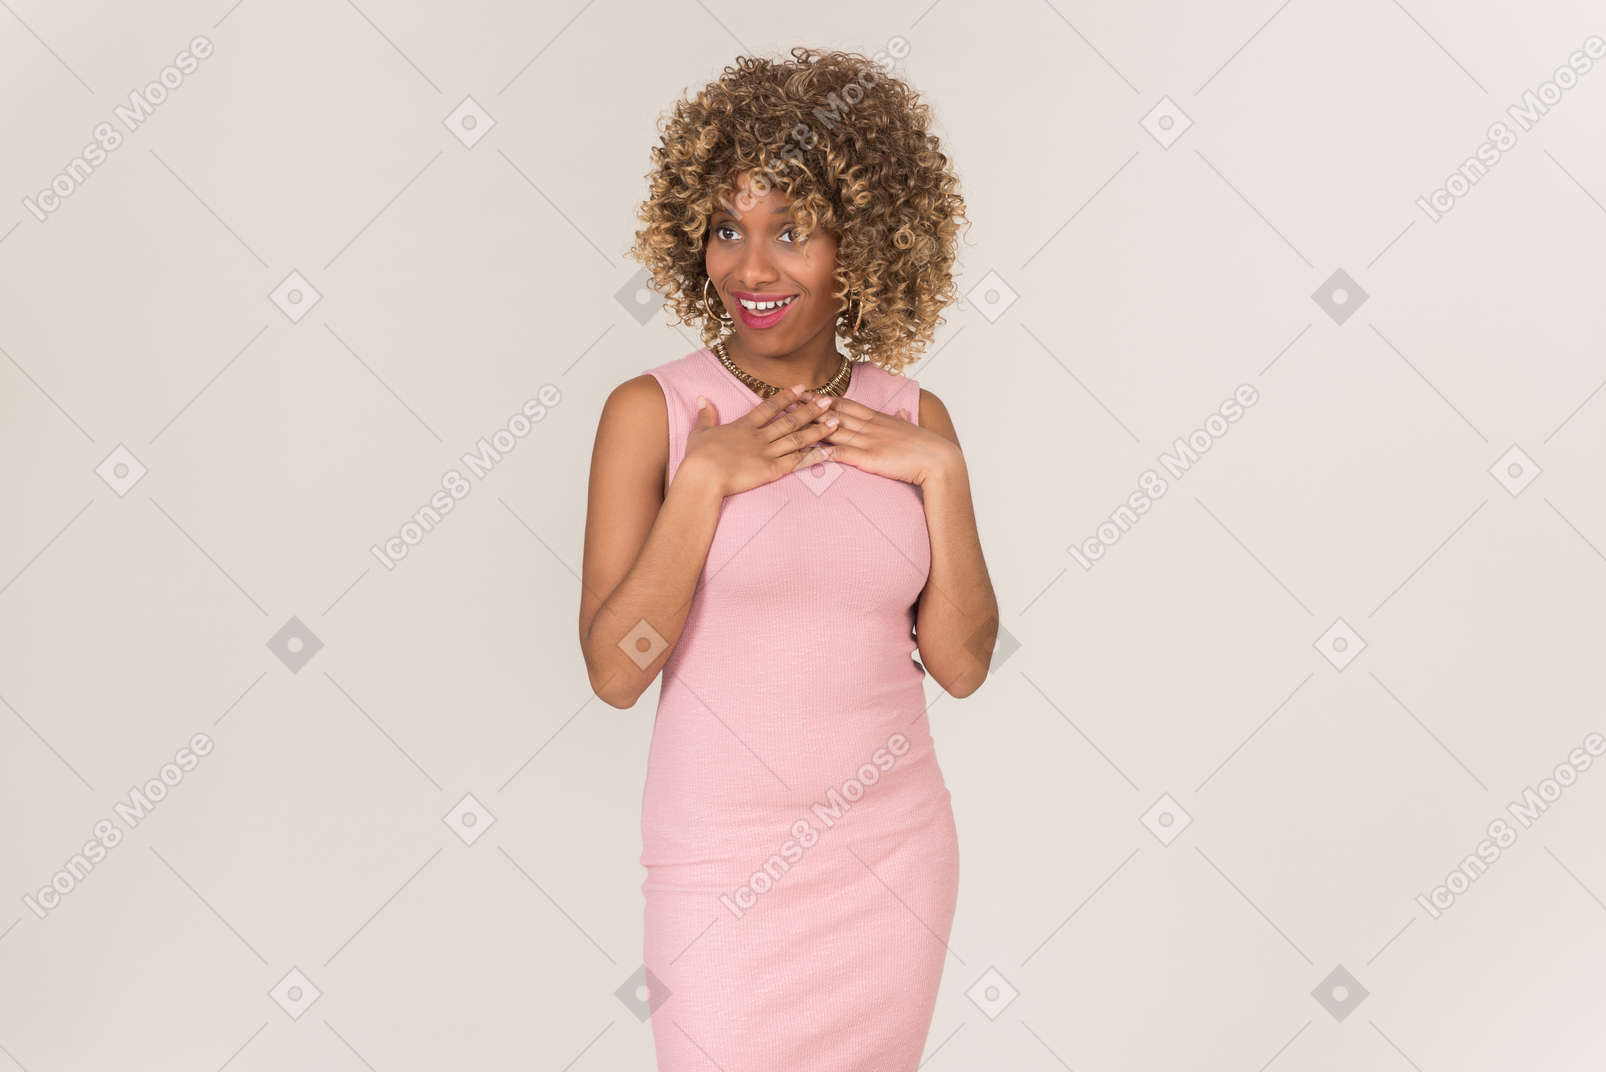 Польщенная женщина в розовом платье